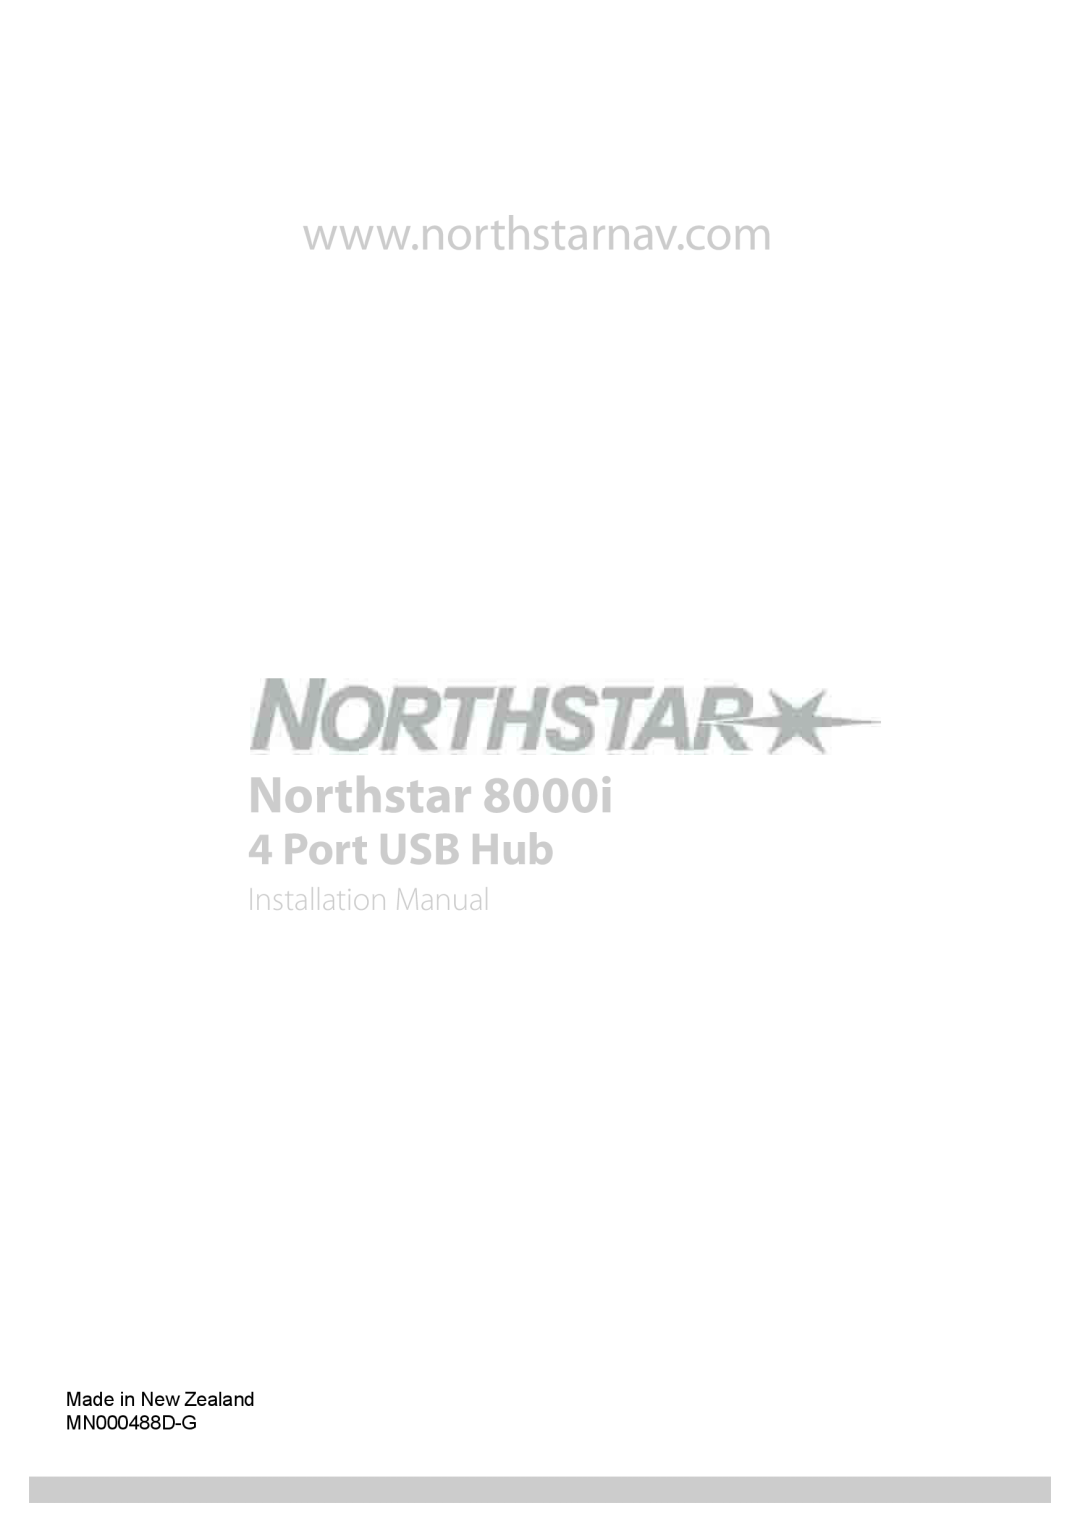 North Star 8000i installation manual Northstar, Port USB Hub, Installation Manual, Made in New Zealand MN000488D-G 